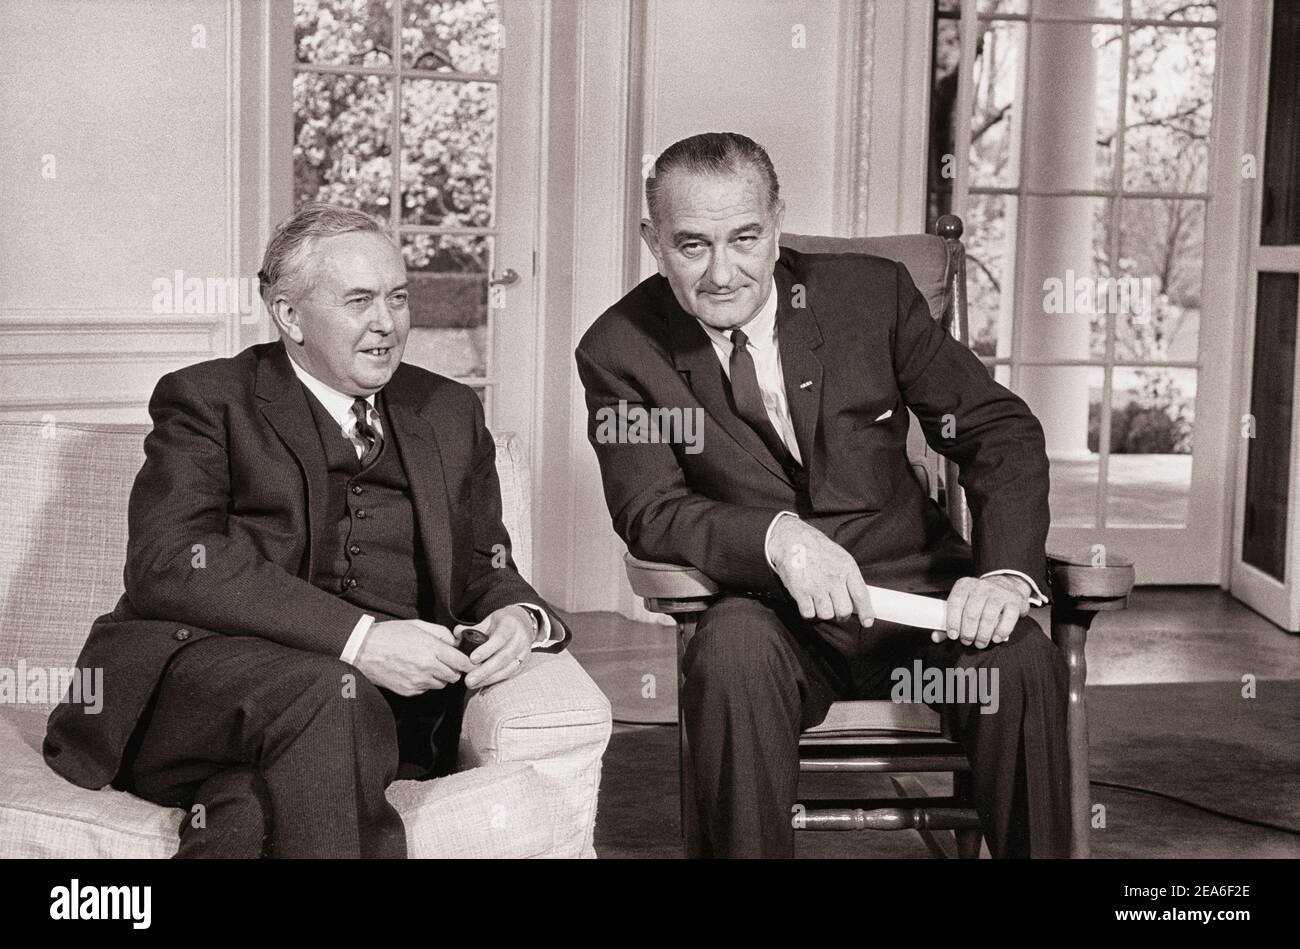 Der amerikanische Präsident Lyndon Johnson und der britische Premierminister Harold Wilson bei der Pressekonferenz im Weißen Haus, Washington, D.C., USA. Von Marion S. Trikosko ( Stockfoto